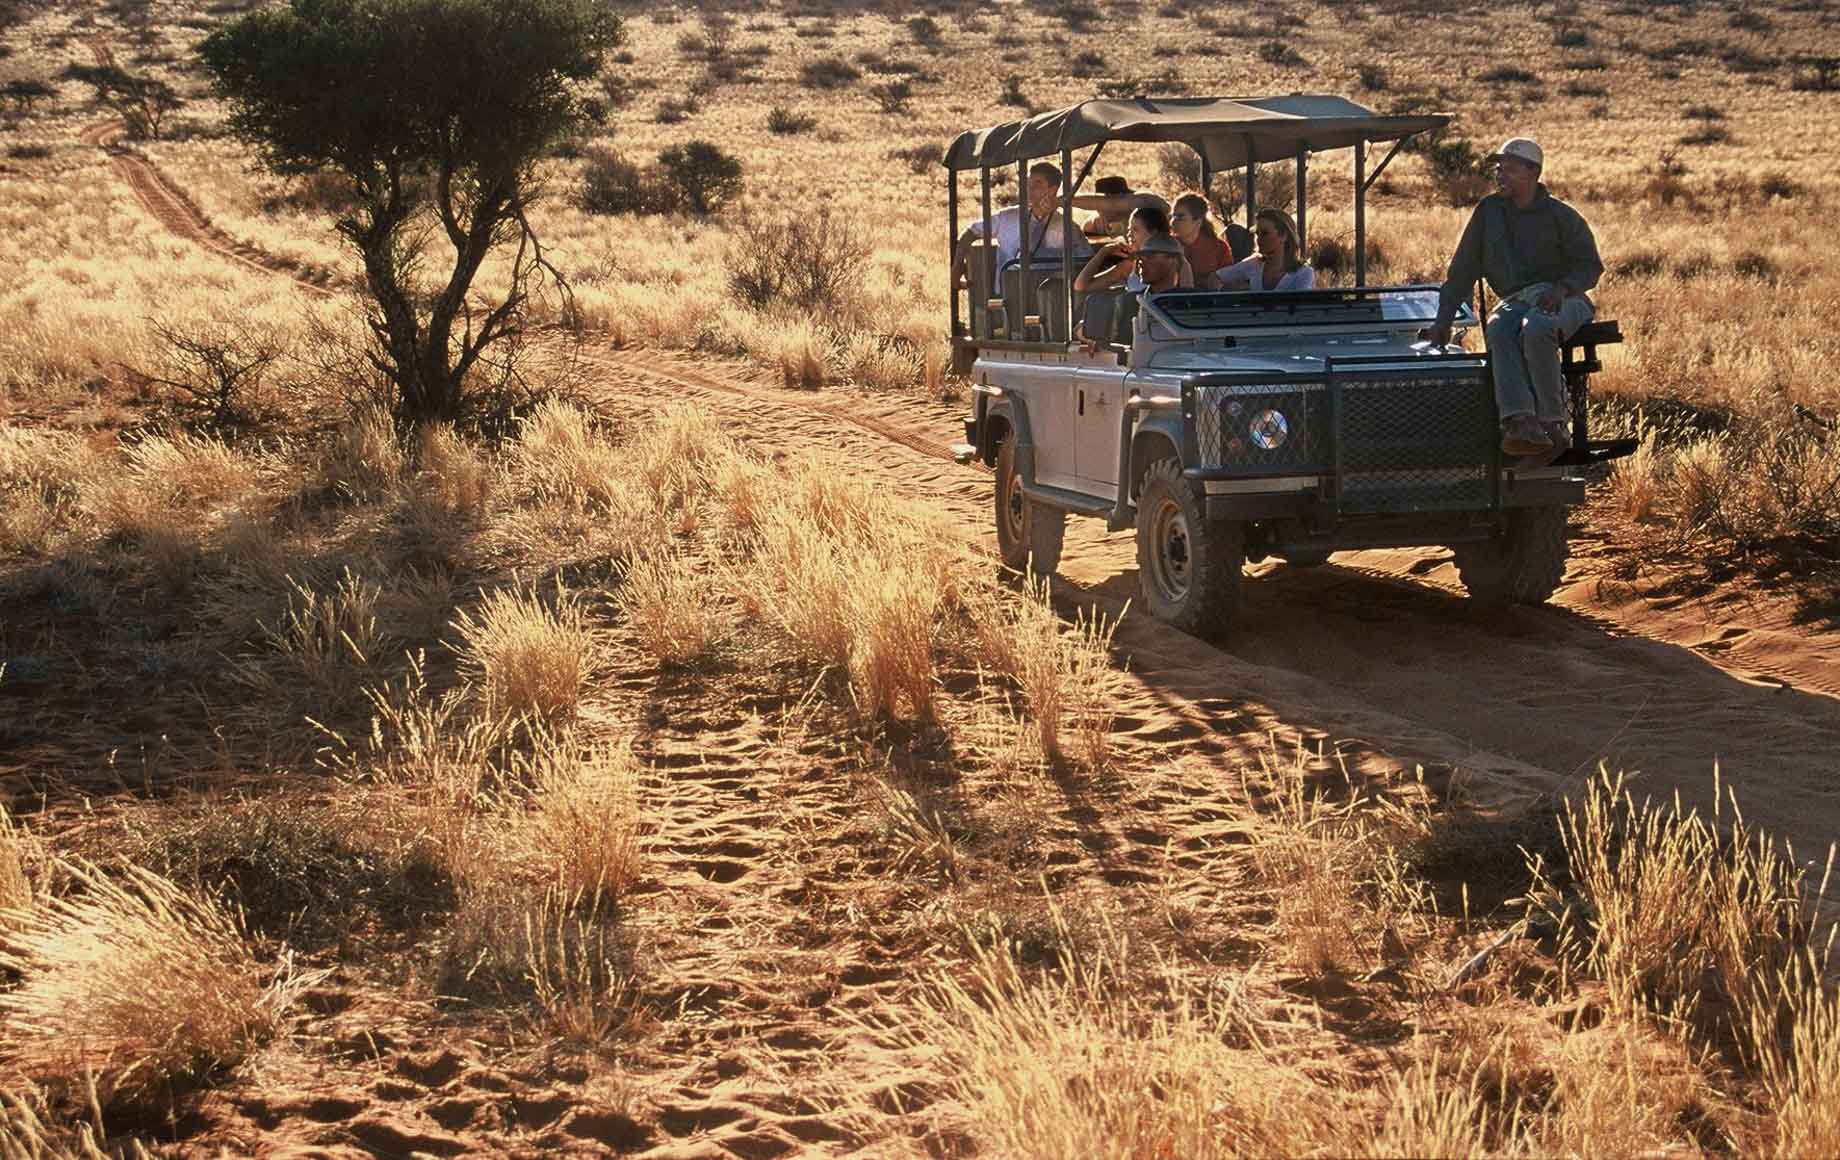 Kalahari desert safari view